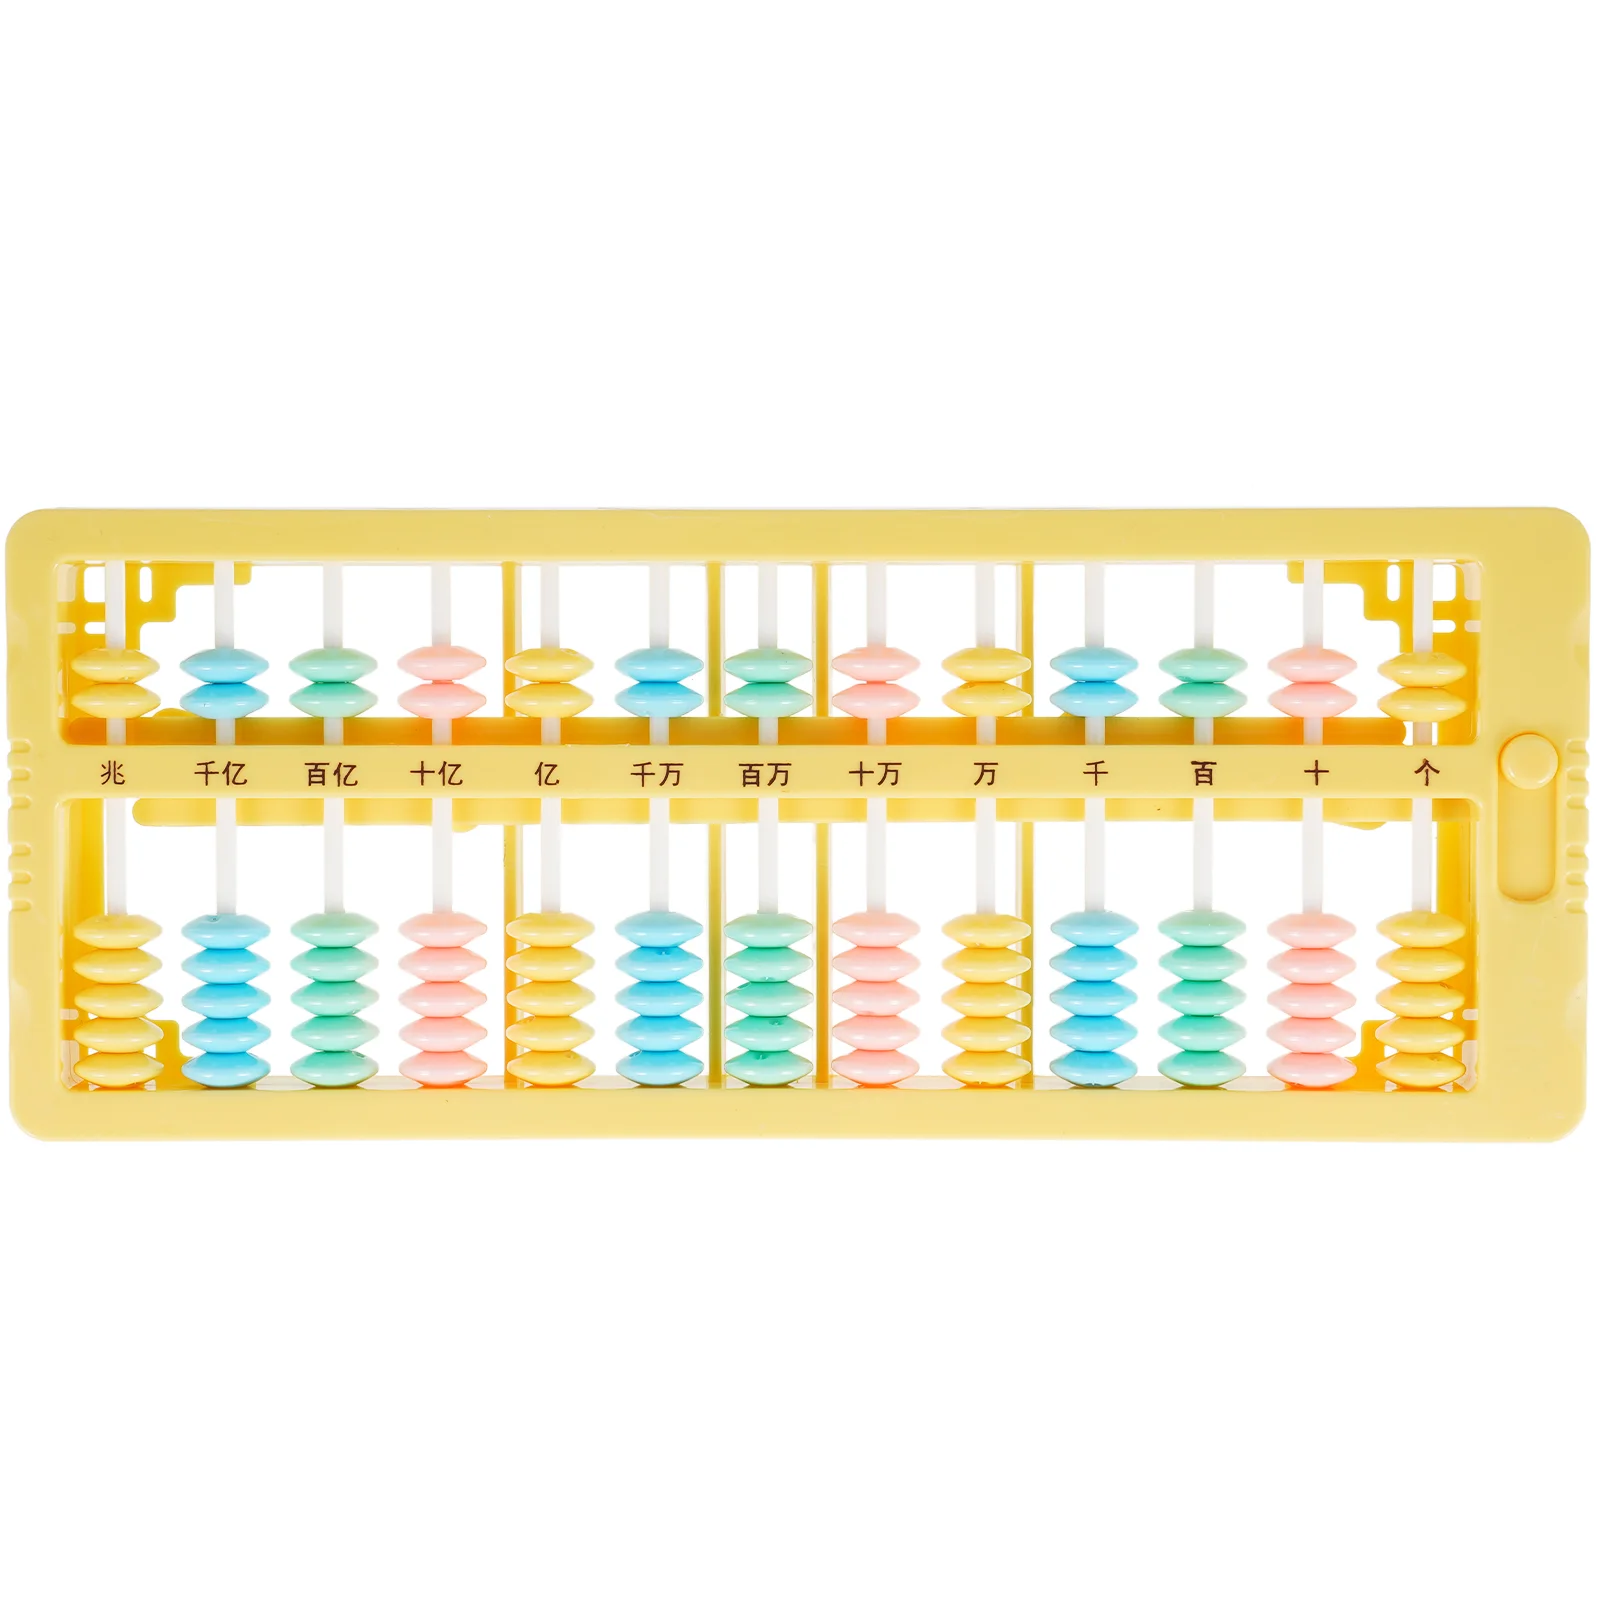 

Детская Рамка с подсчетом Abacus, практичный инструмент для математического обучения, развивающая игрушка для детей